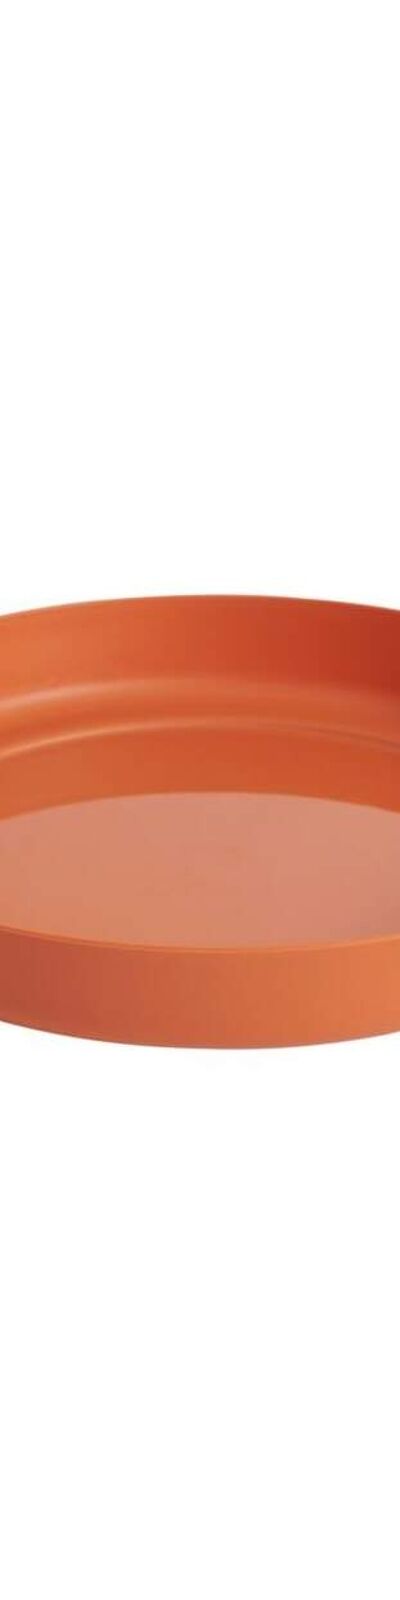 Clever Pots - Soucoupe pour pot de fleurs (Terre cuite) (33 mm x 227 mm x 227 mm) - UTST9321